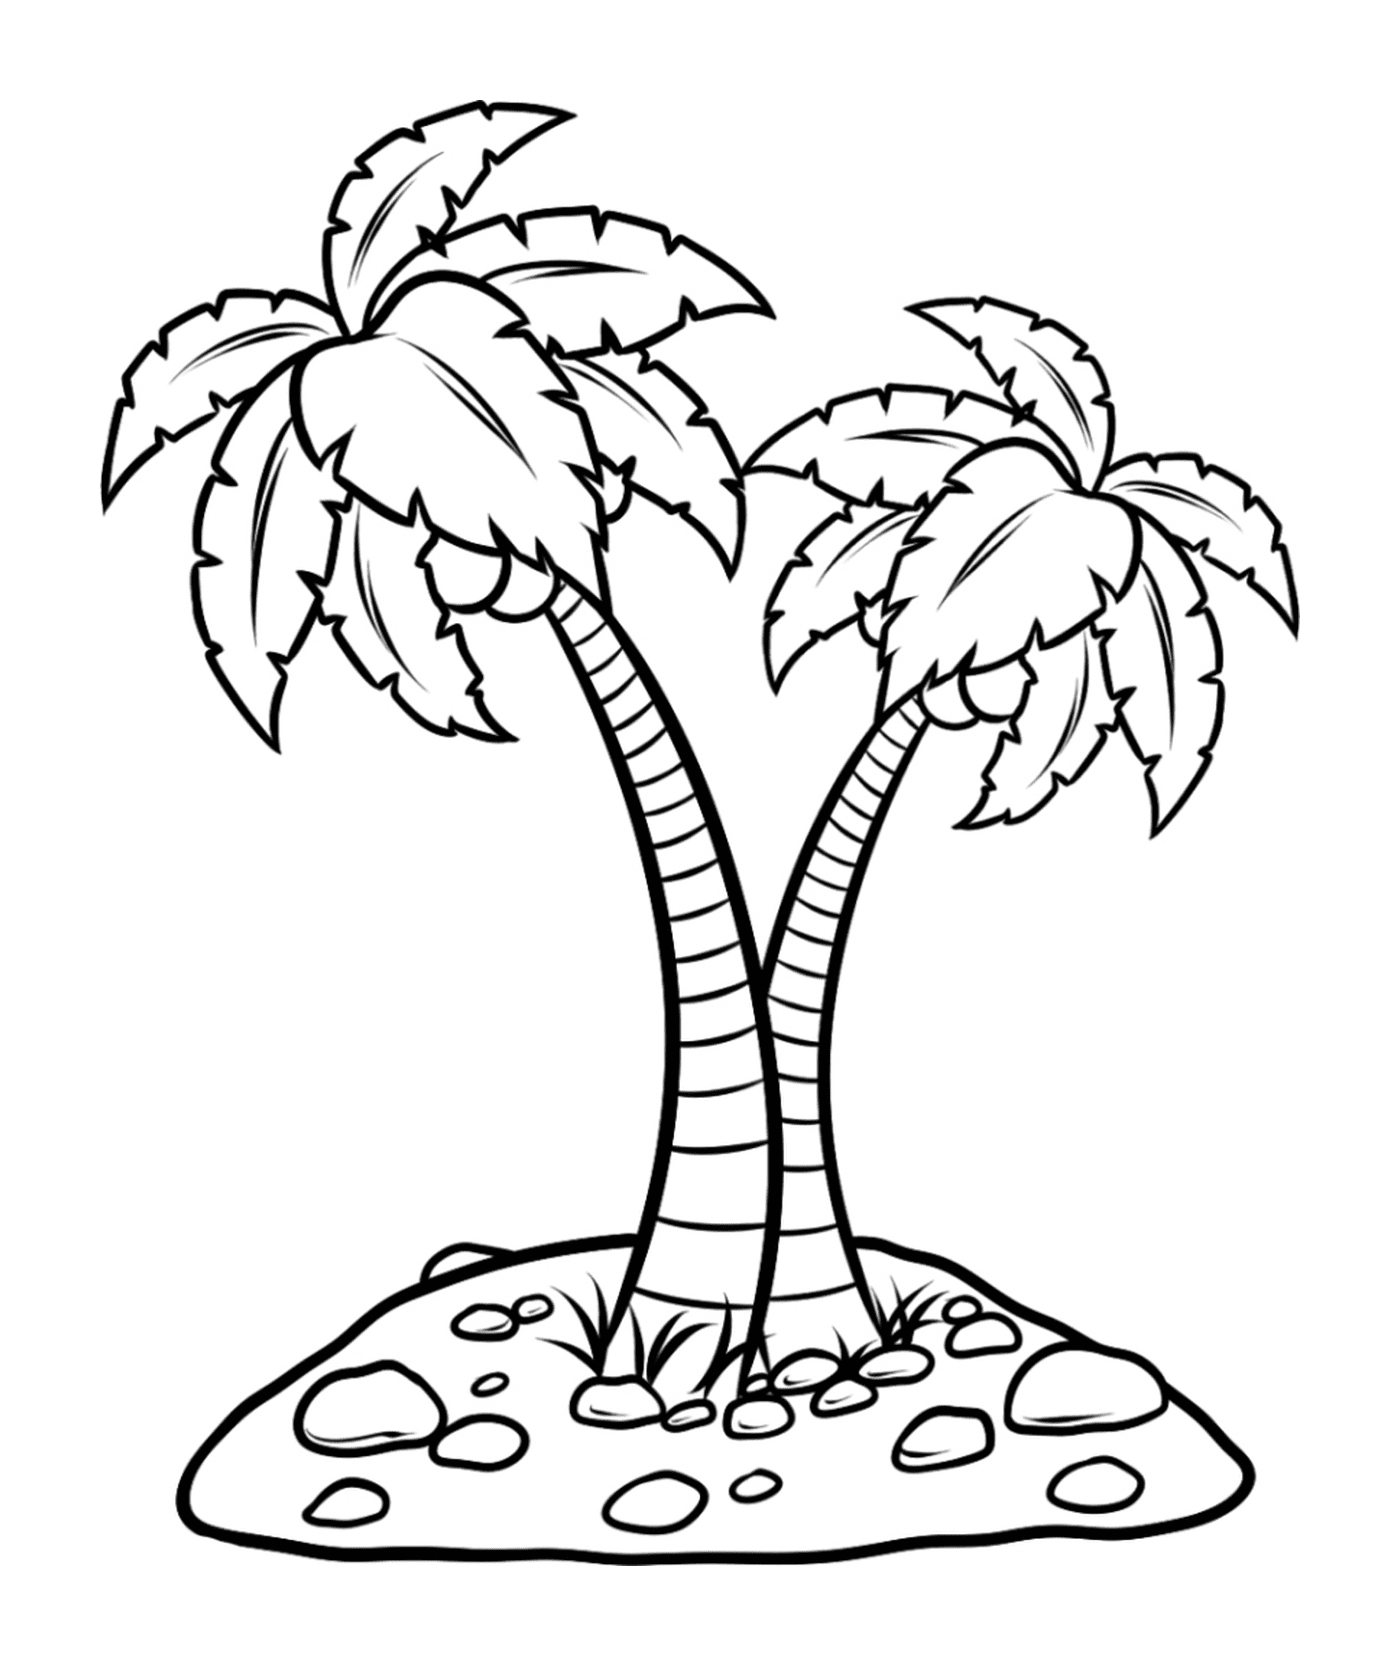  易利棕榈树 